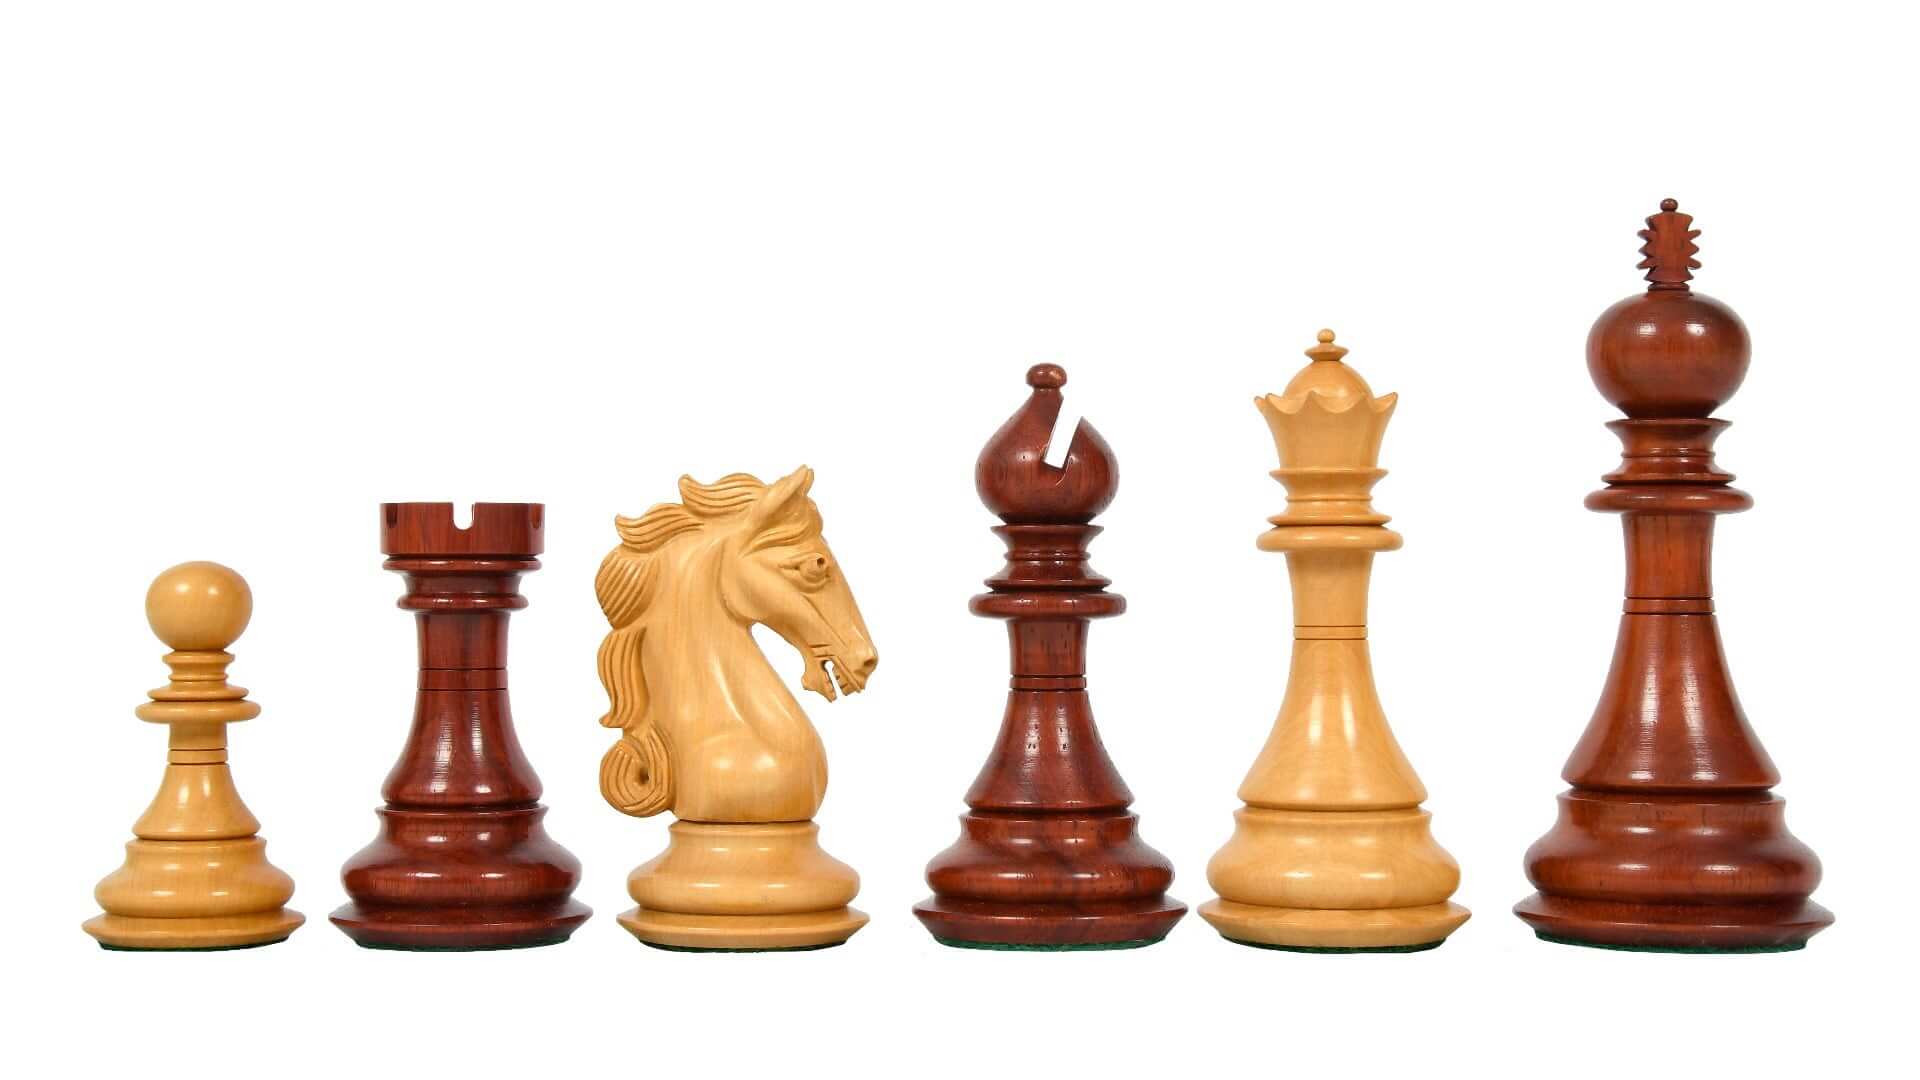 Schöne holz schachfiguren schach